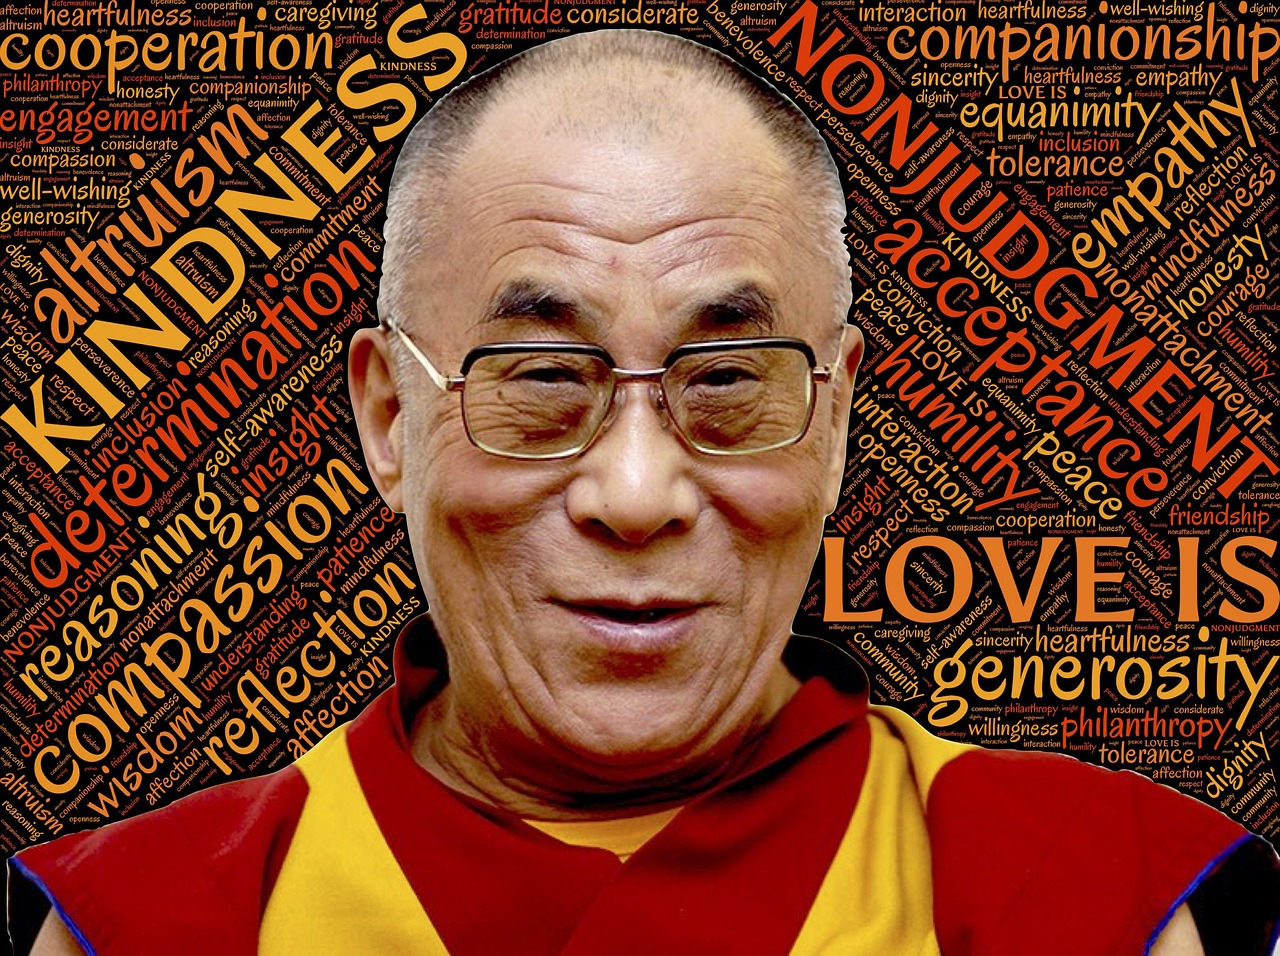 Утренняя практика от Далай-ламы, чтобы день прошел превосходно